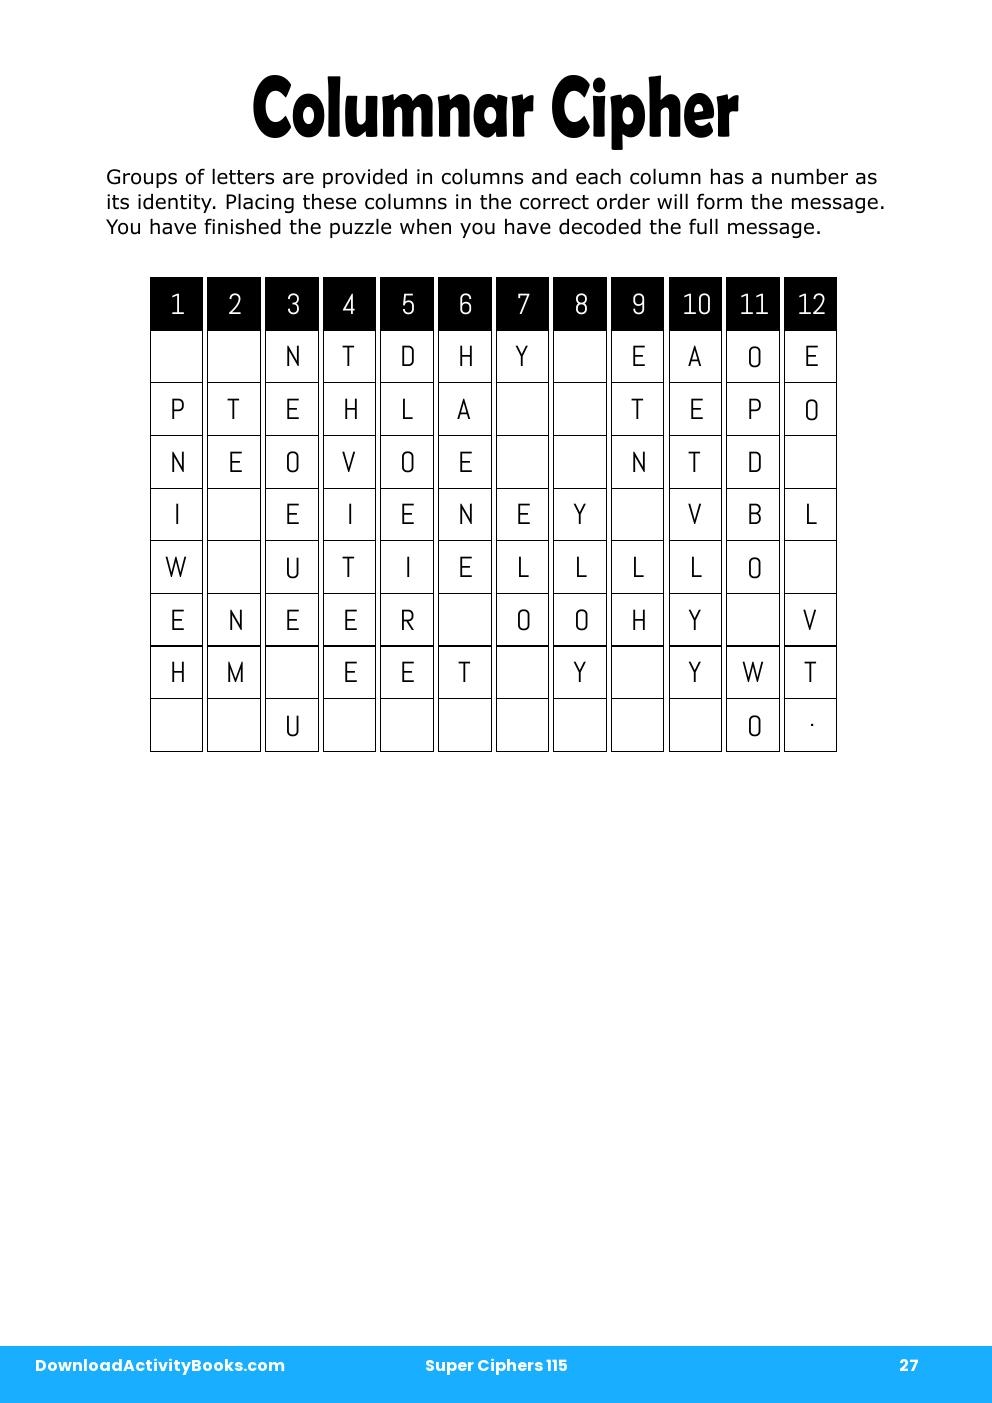 Columnar Cipher in Super Ciphers 115